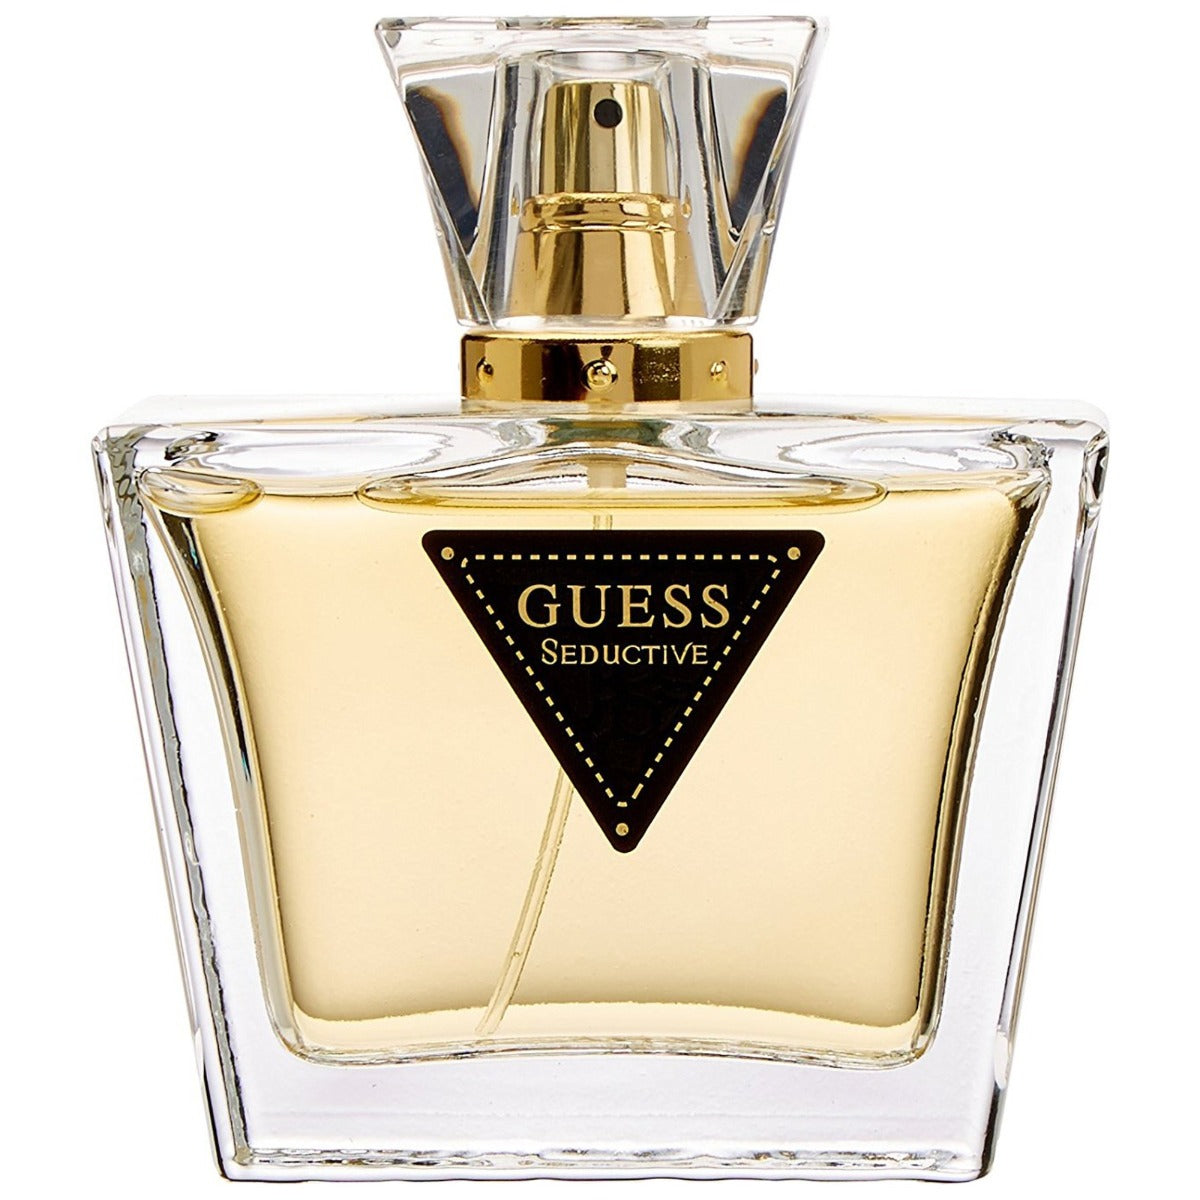 Guess Seductive Perfume For Women Eau de Toilette, 75ml